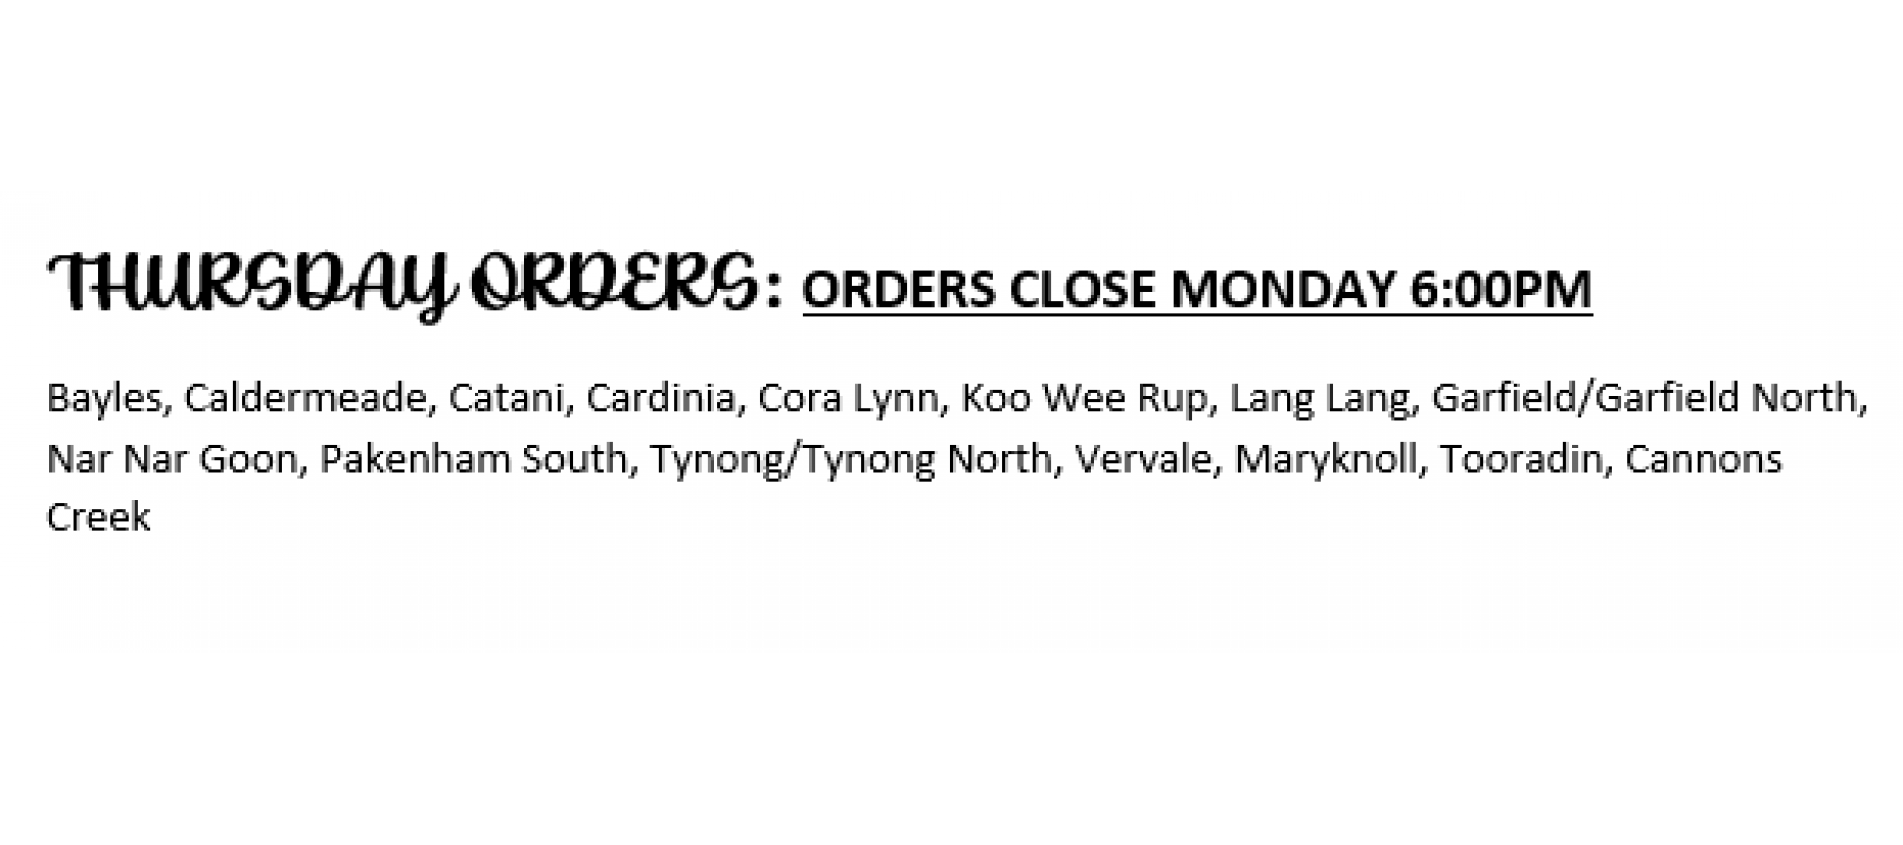 Thursday orders